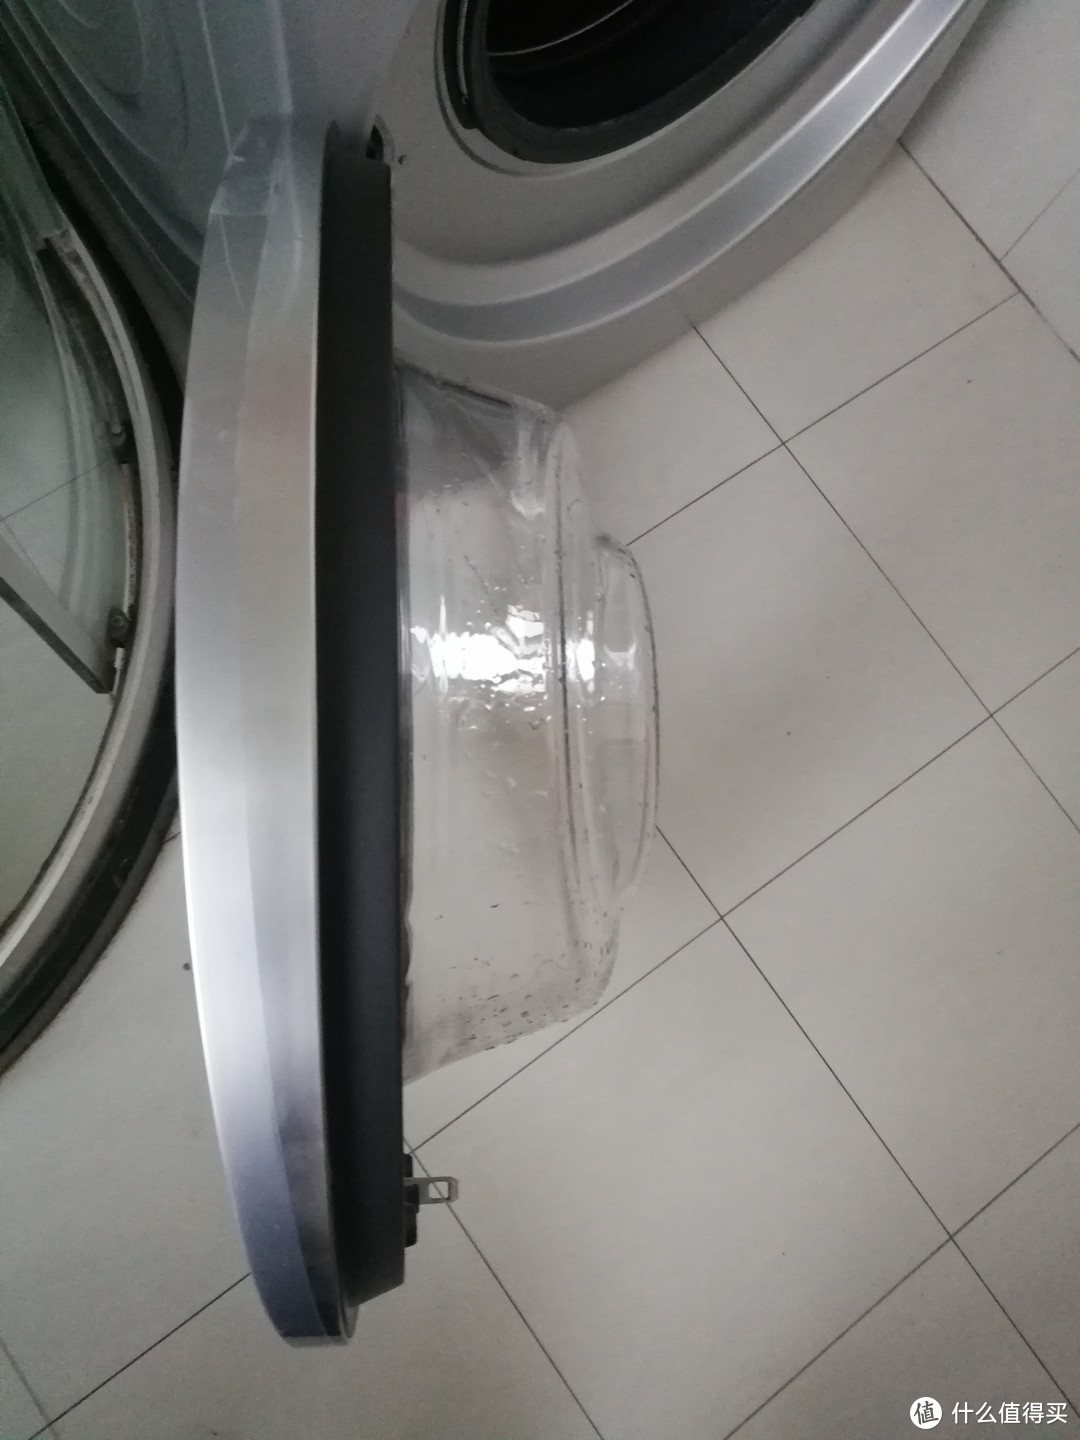 洗衣利器 博世 XQG100-WAU28568LW 10kg滚筒洗衣机